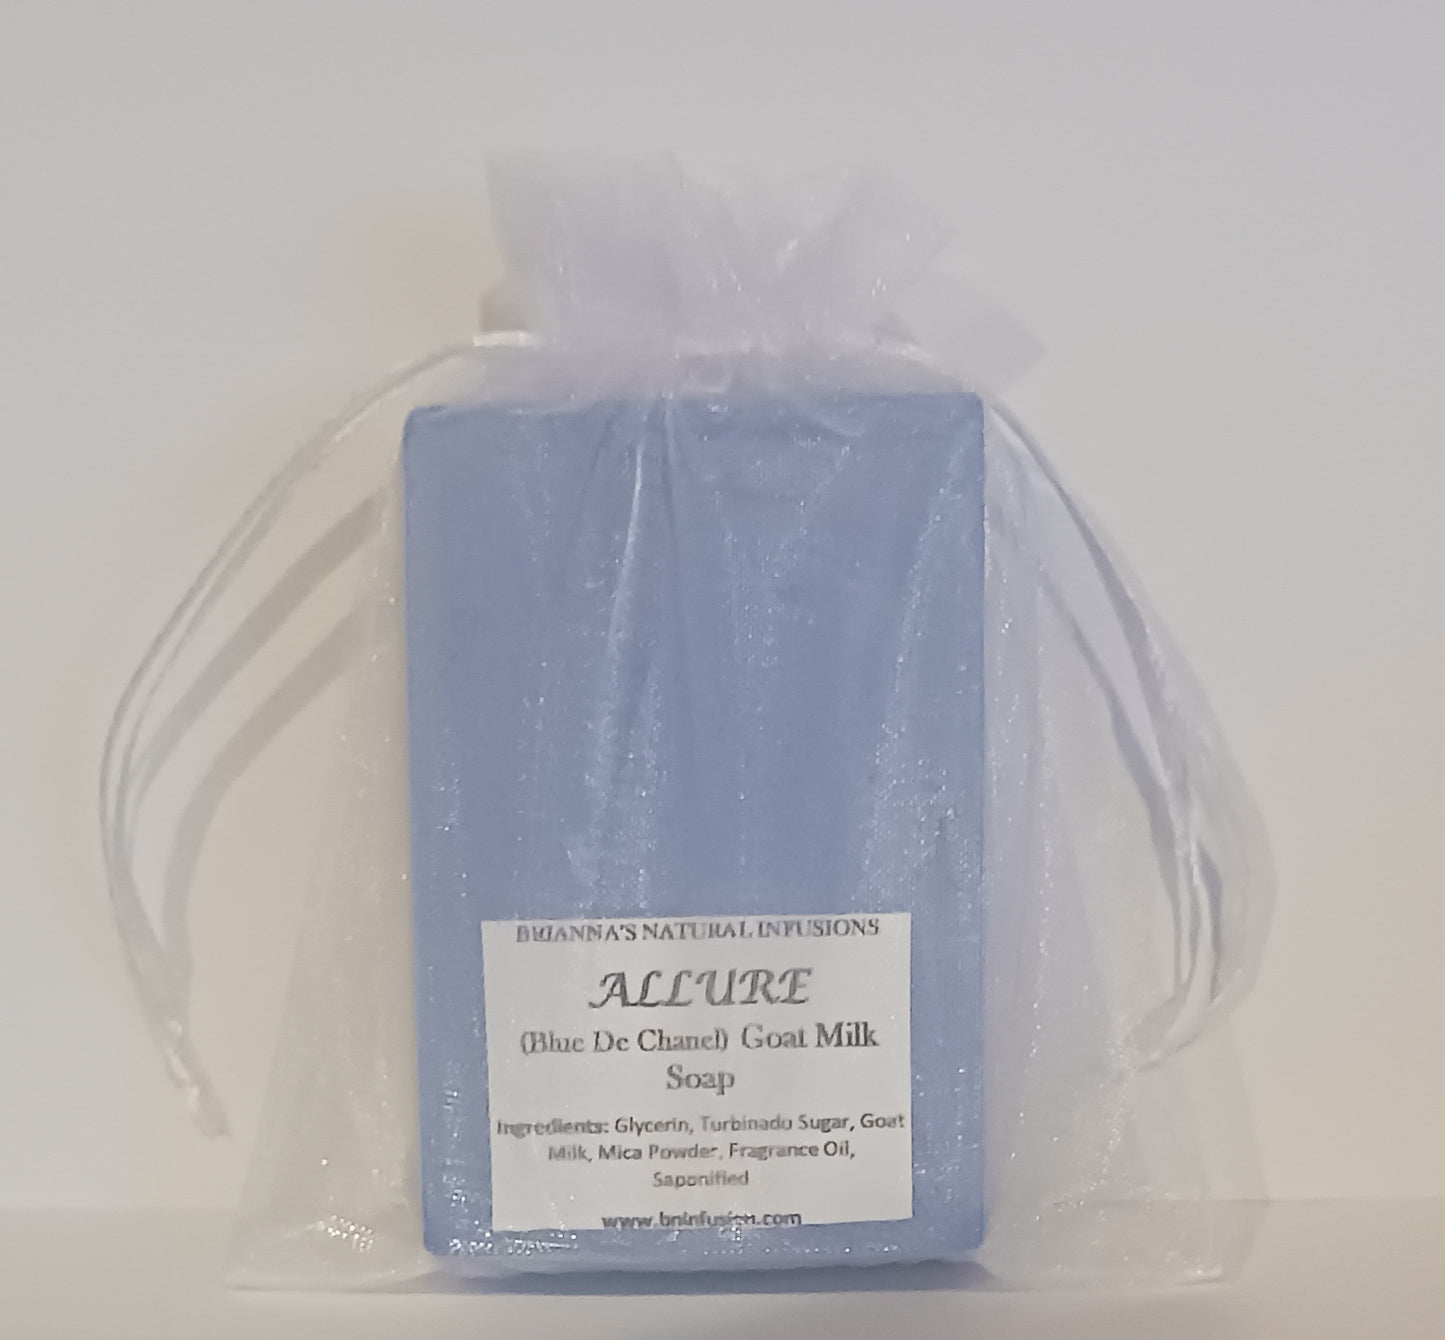 Allure (Blue De Chanel) Men's Goat Milk Soap